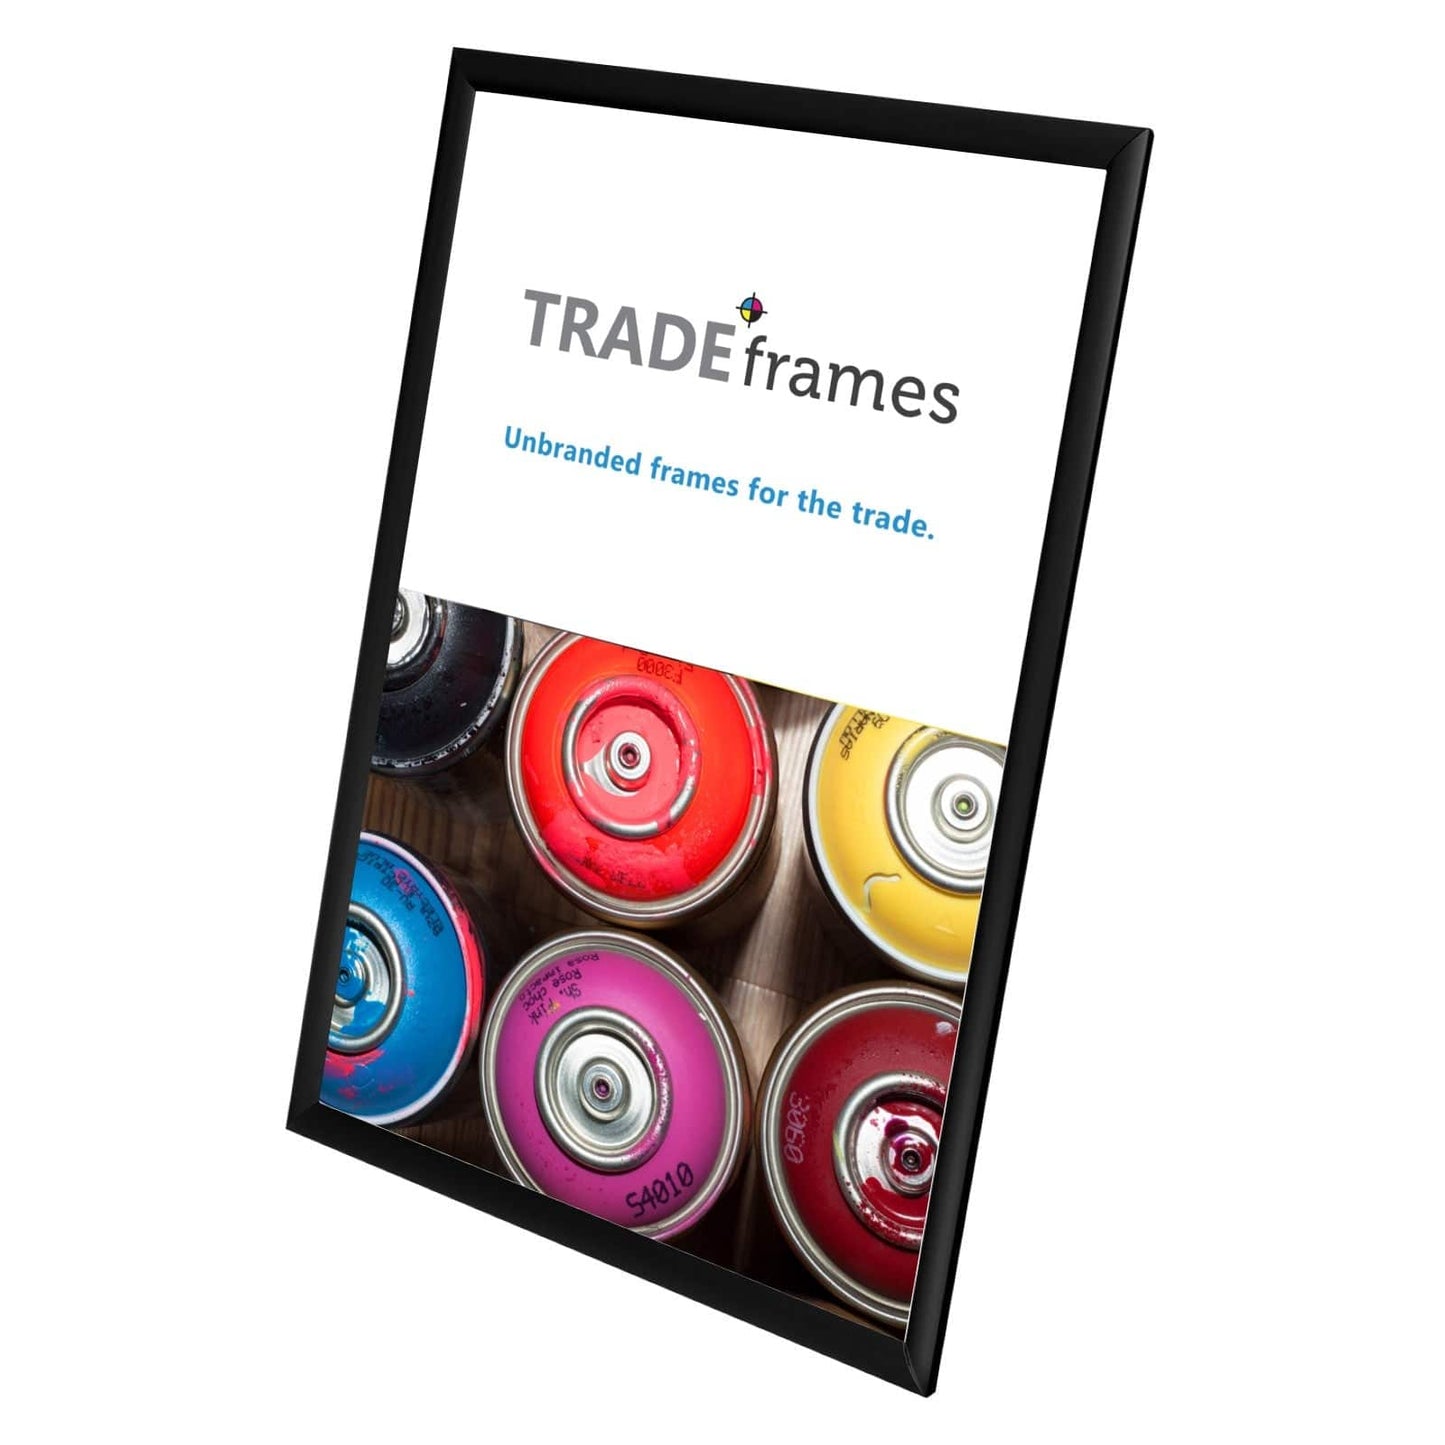 14x22 Black TRADEframe Snap Frame - 1" Profile - Snap Frames Direct